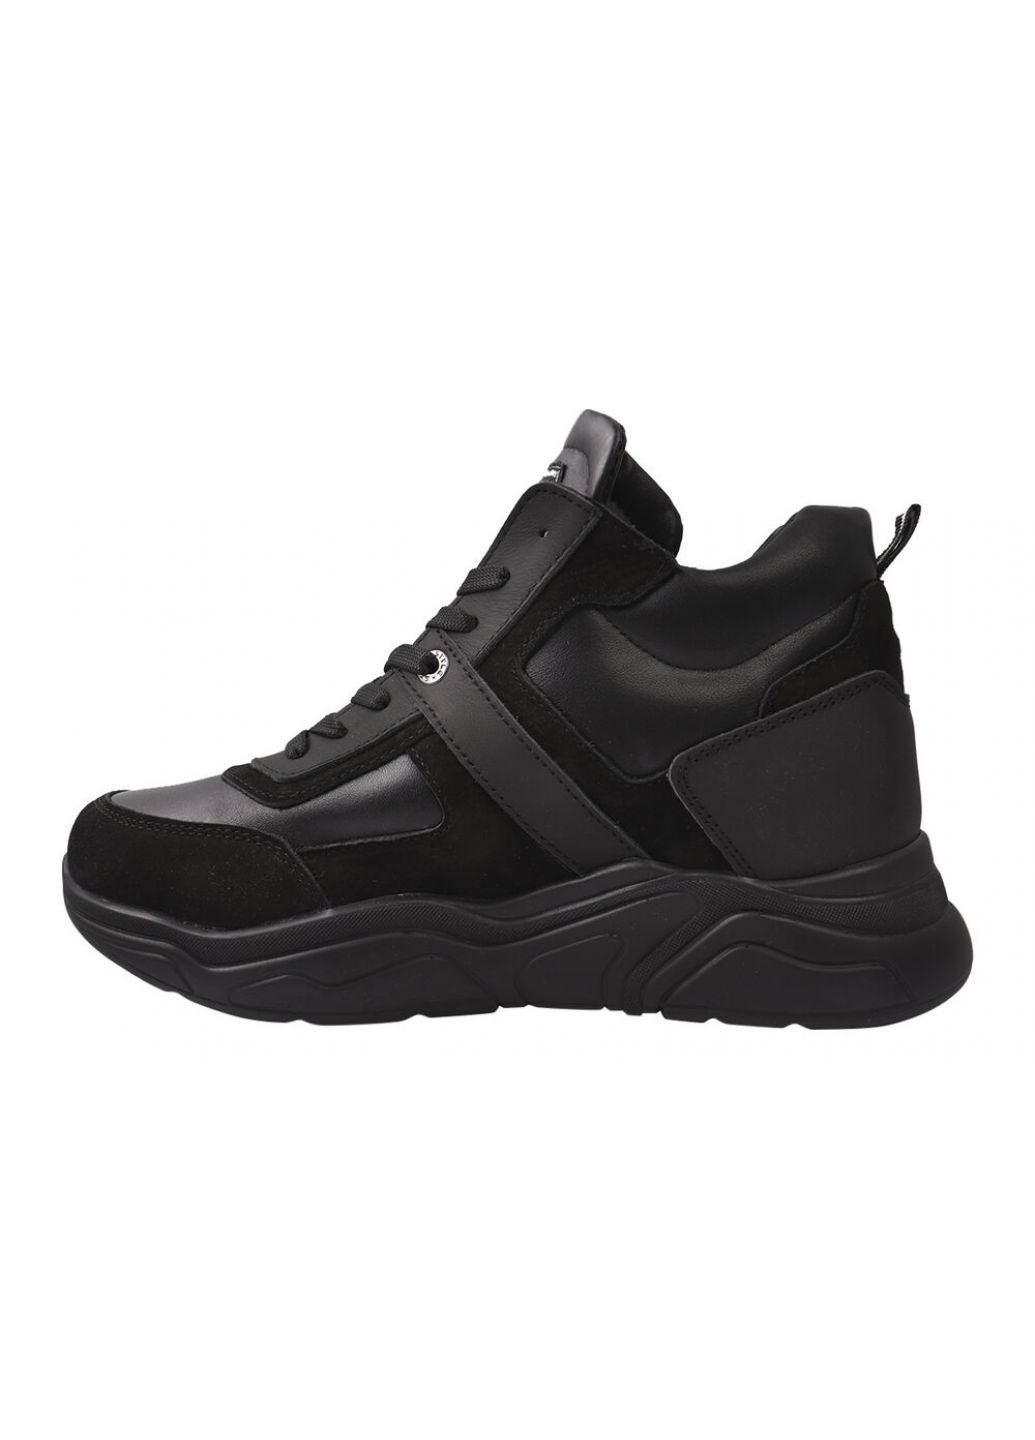 Чорні черевики чоловічі з натуральної шкіри (нубук), на шнурівці, на платформі, чорні, україна Konors 499-21ZHS